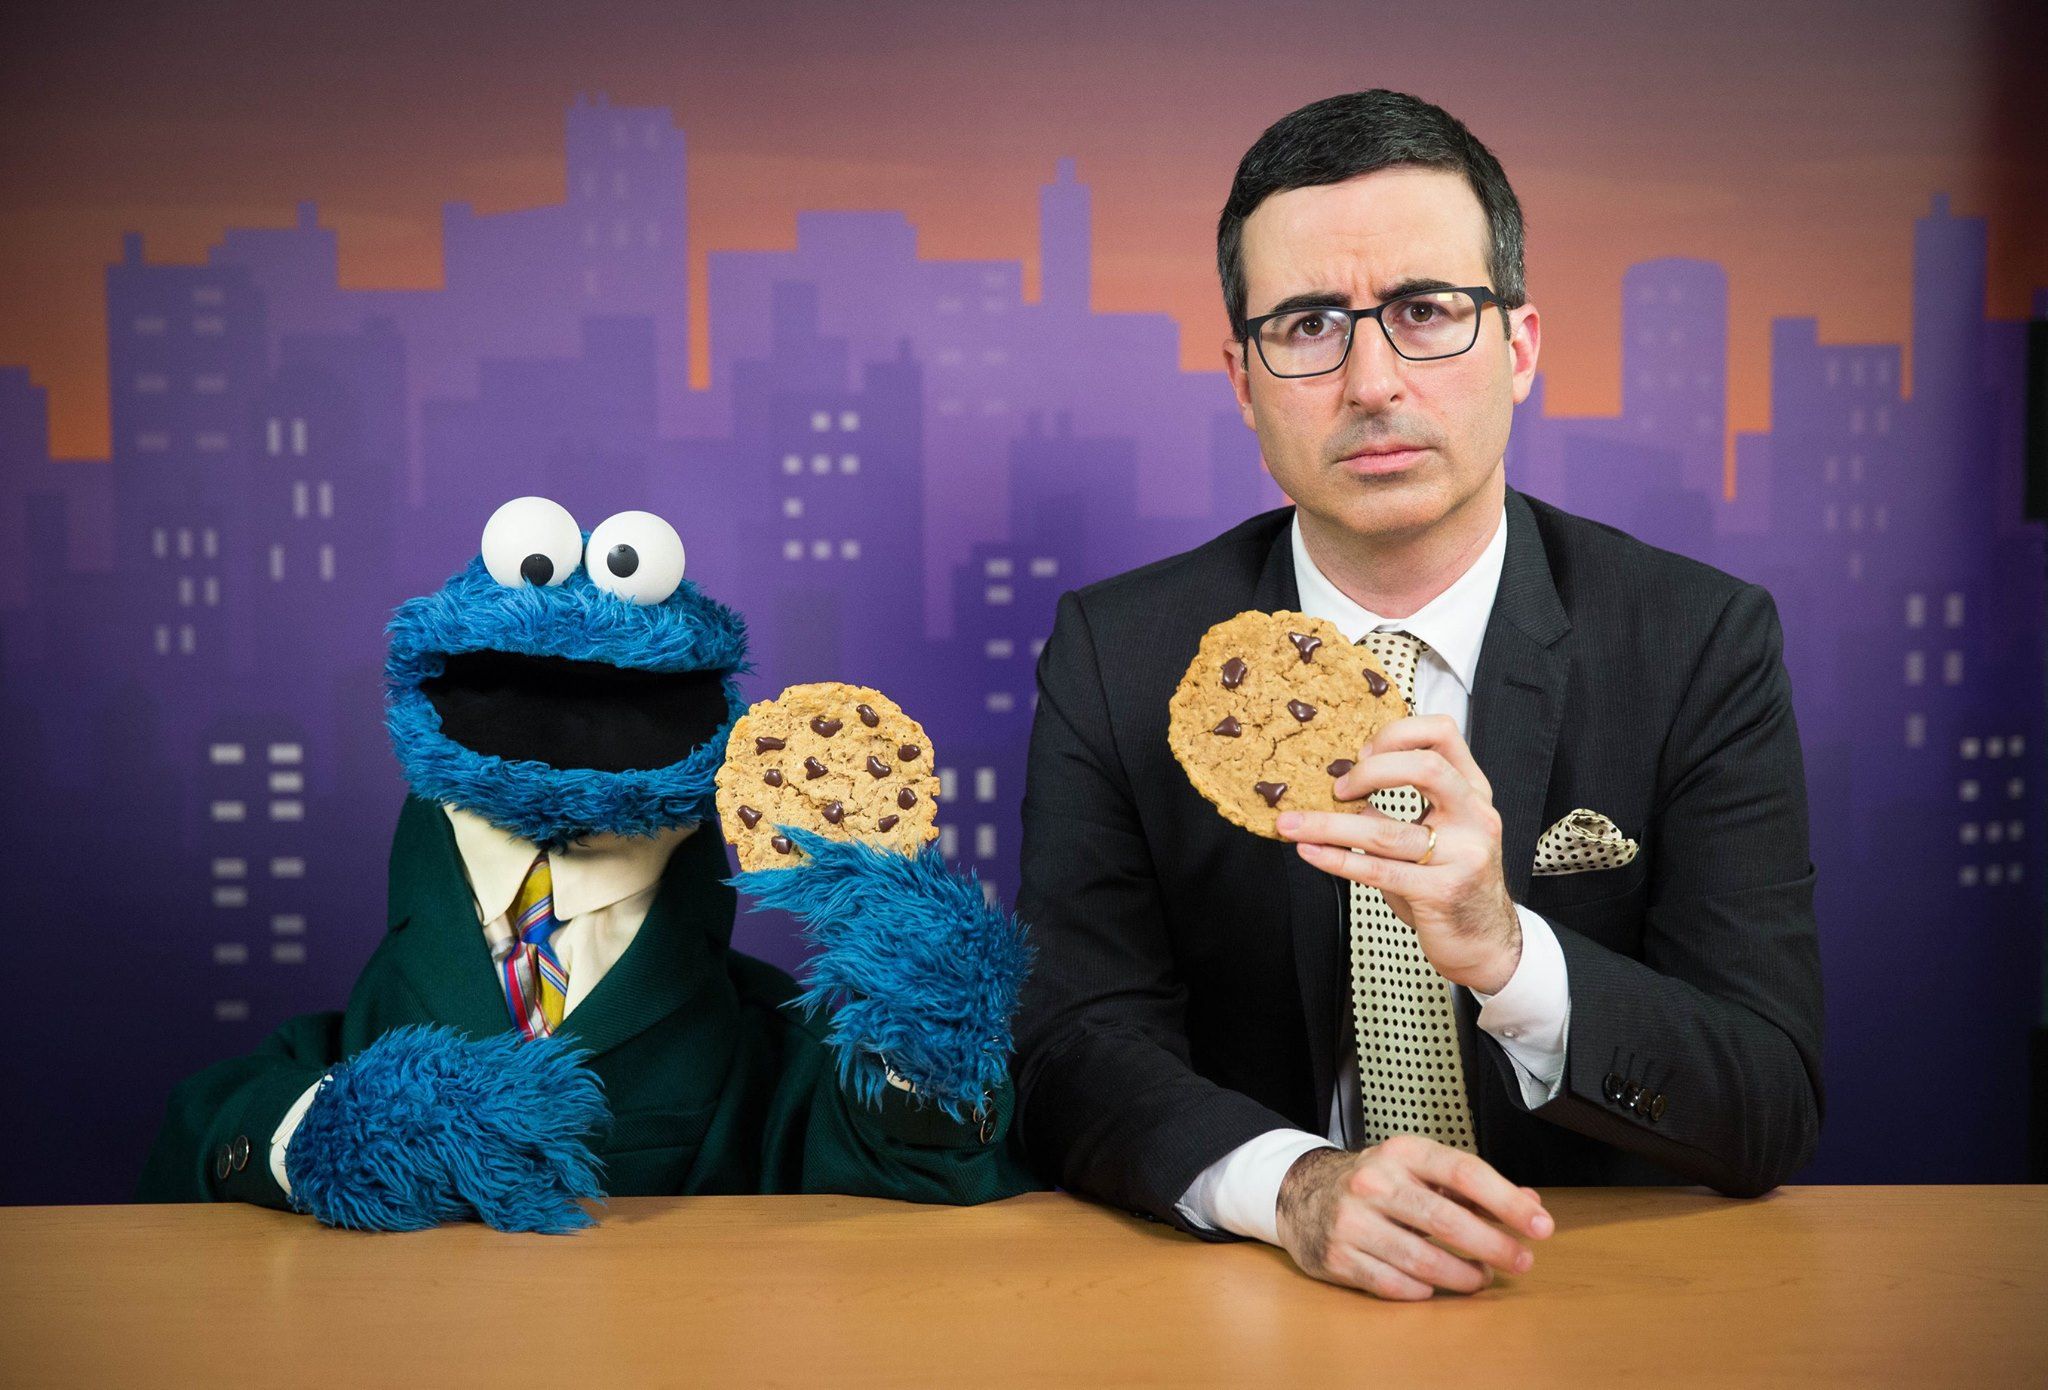 O Cookie Monster e John Oliver sentados em uma mesa segurando biscoitos